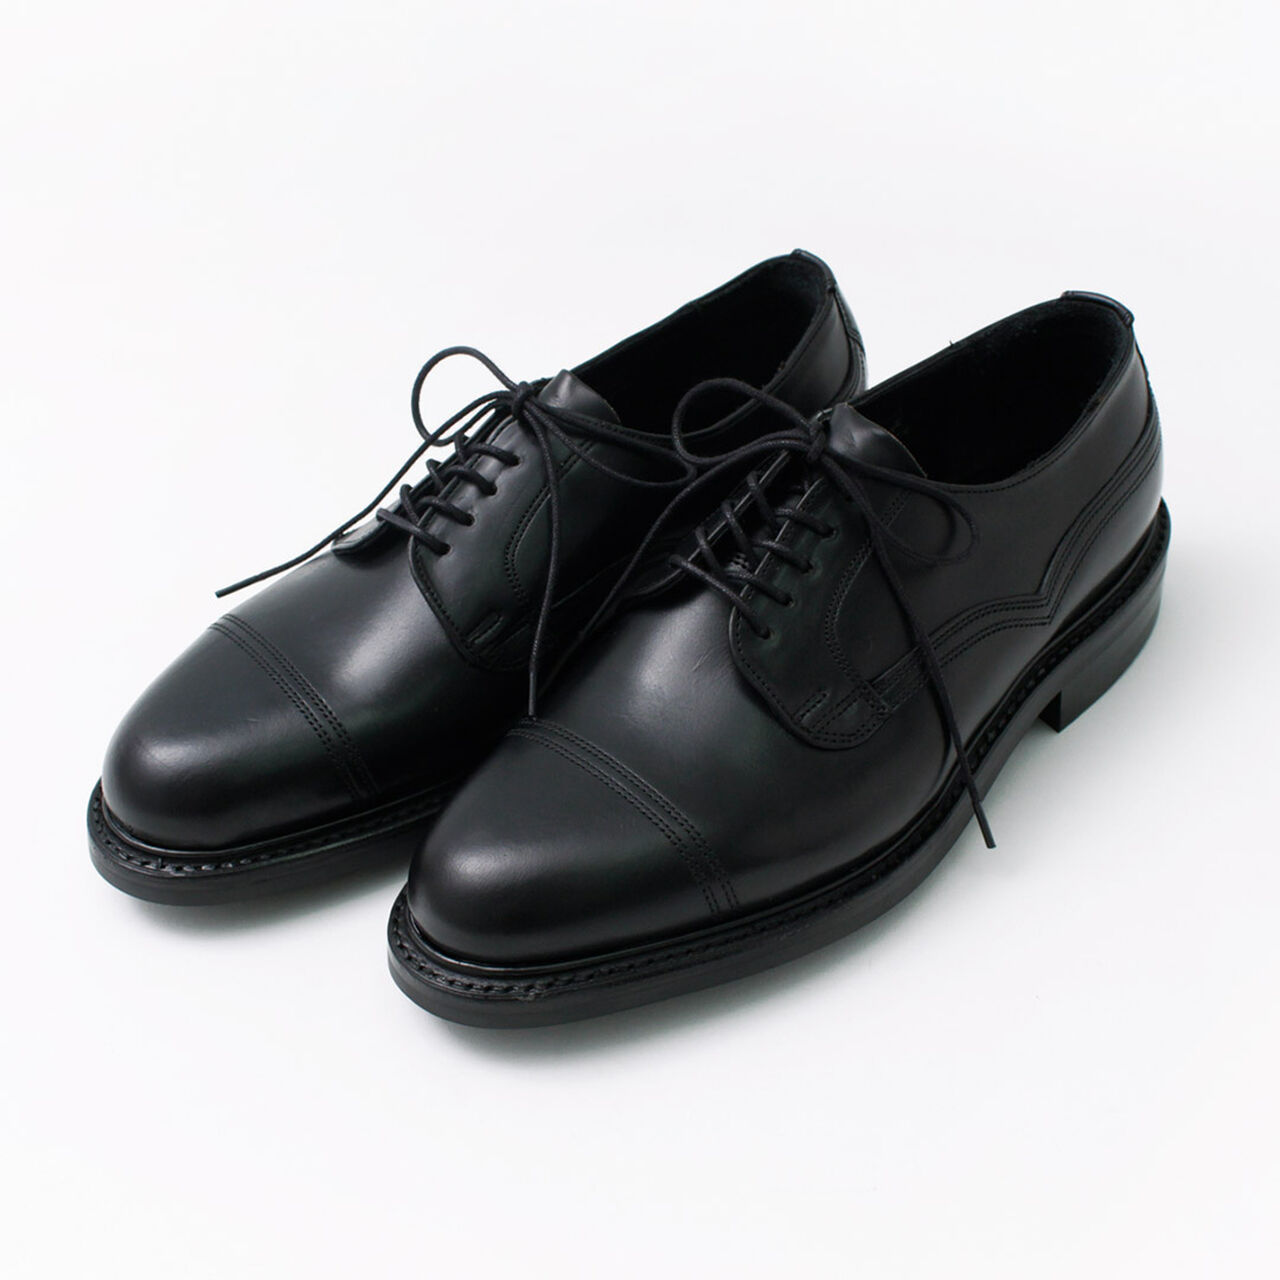 CAIRNGORM H Leather Shoes,Black, large image number 0